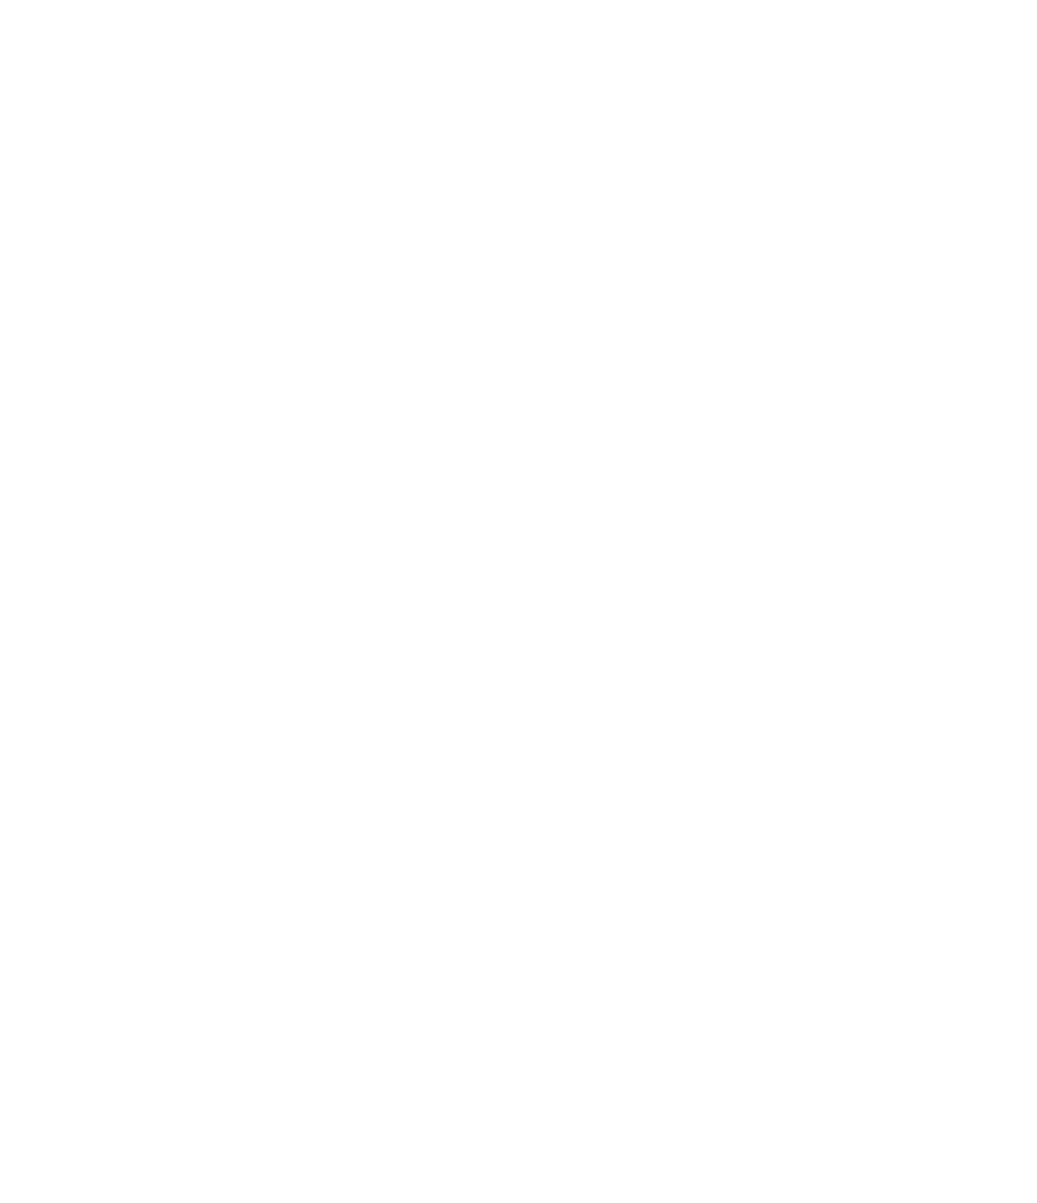 signia white logo